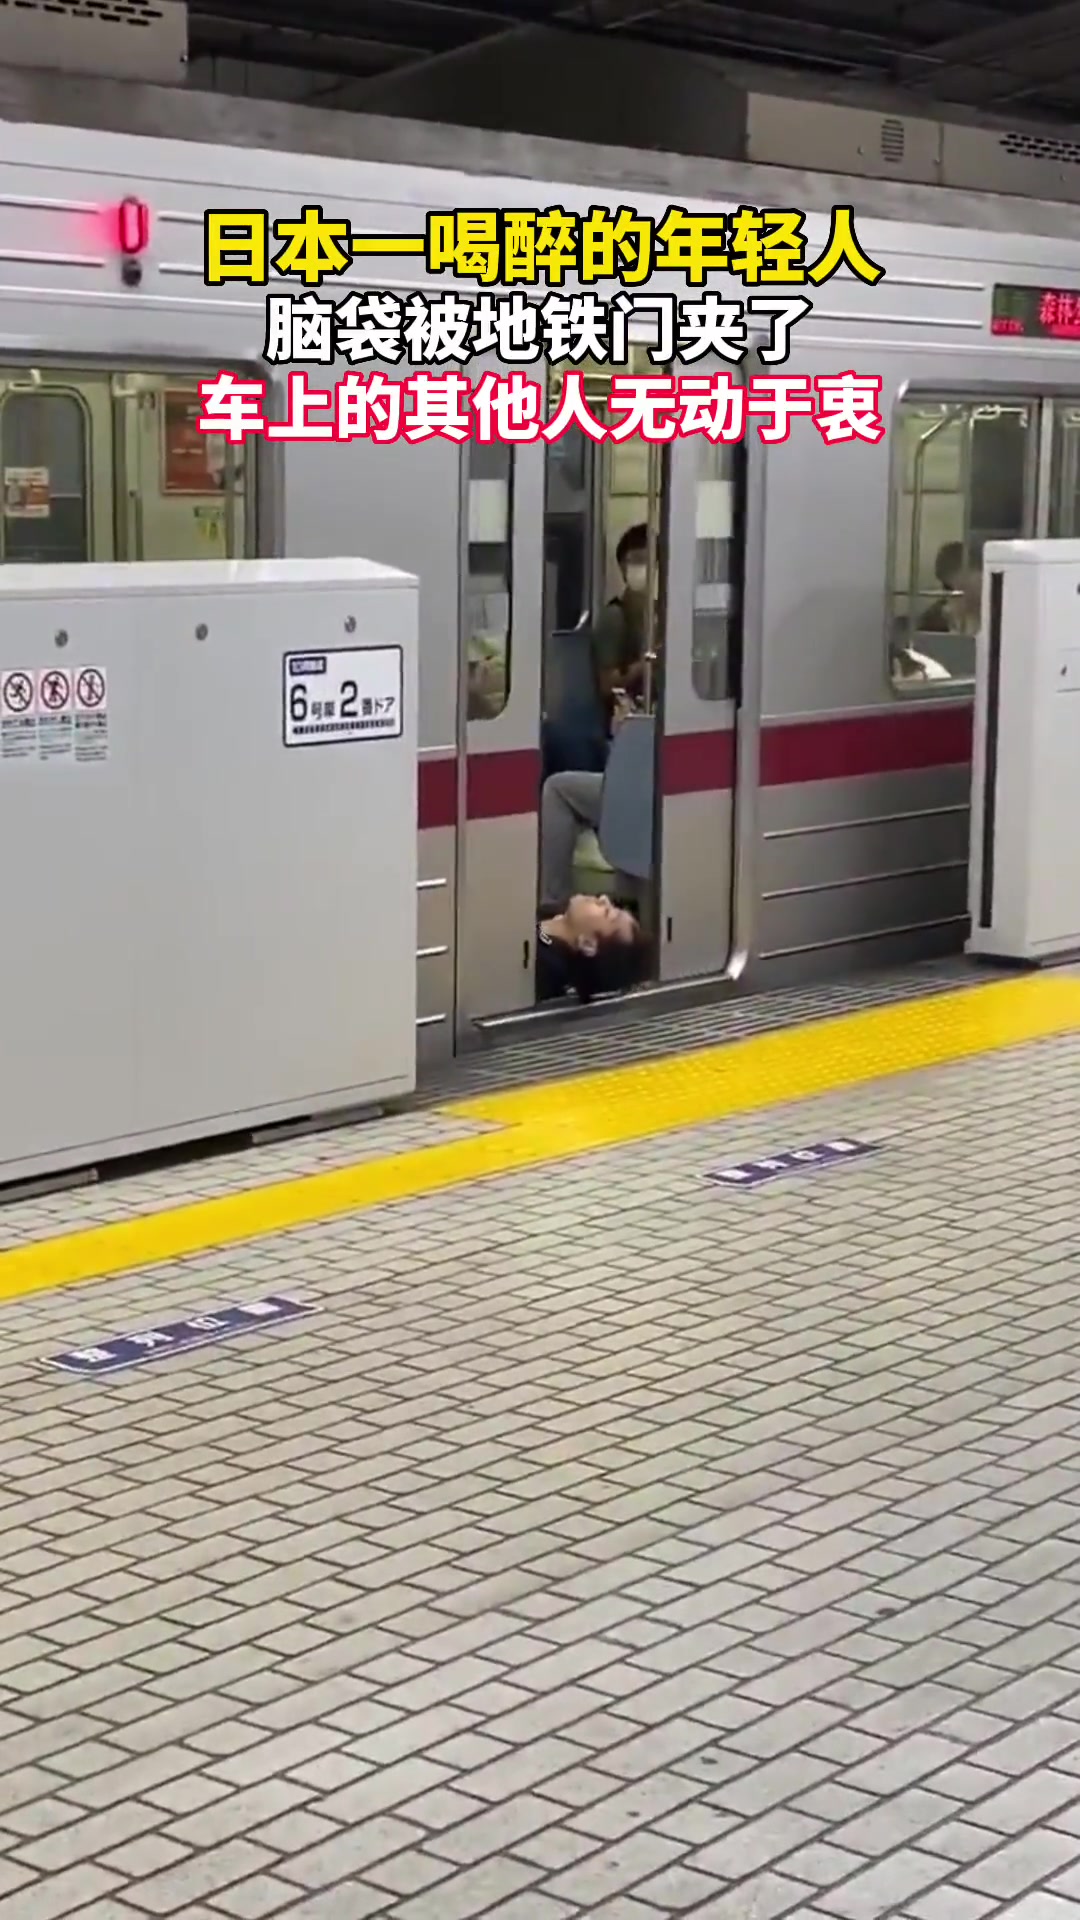 日本一年轻人喝醉脑袋被地铁门夹了……-直播吧